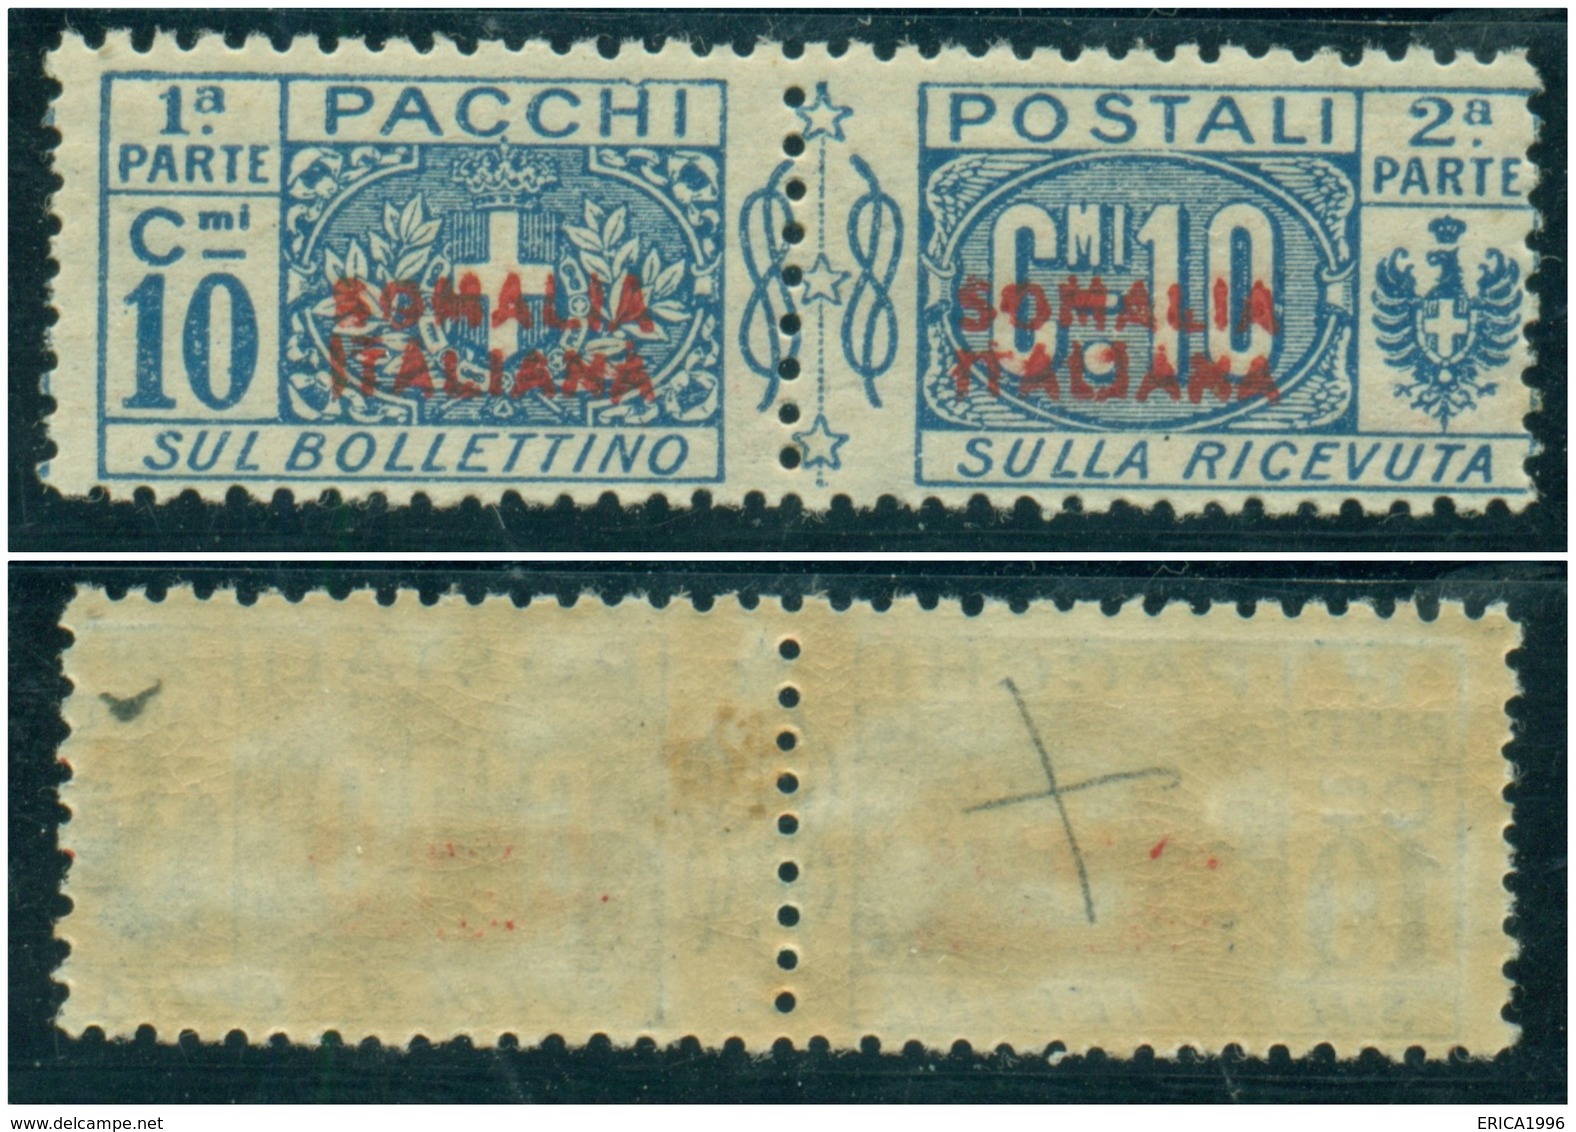 Z1350 ITALIA COLONIE Somalia Italiana 1926 Pacchi Postali 10 C. MNH Sassone N. 31, Valore Catalogo € 110, Ottime Condiz. - Somalie